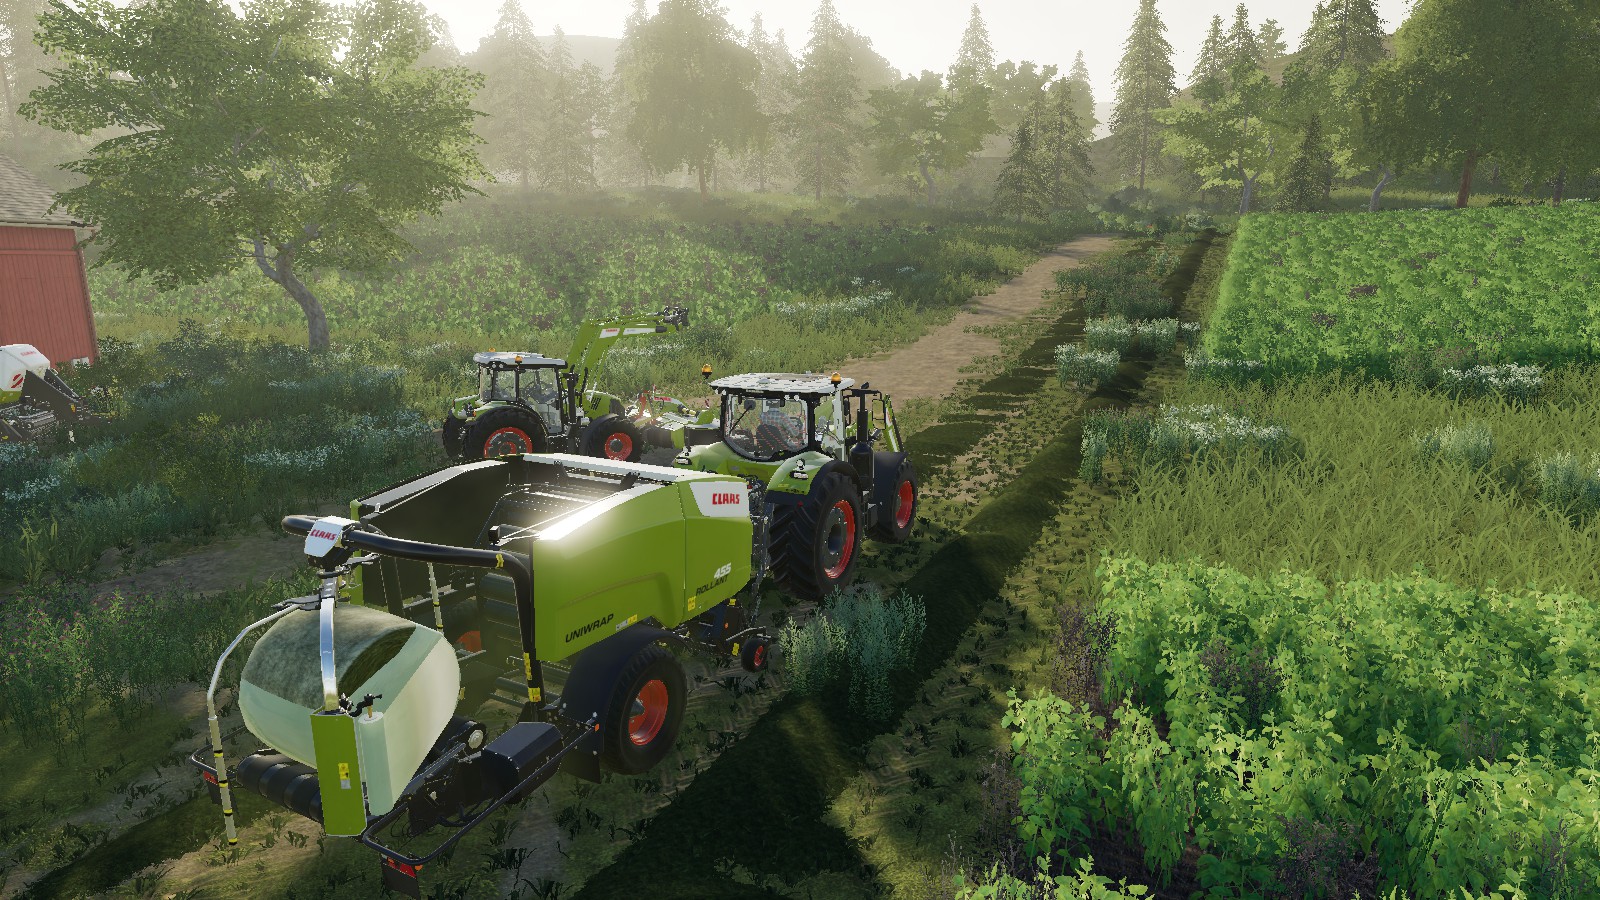 Notícias Farming Simulator 22